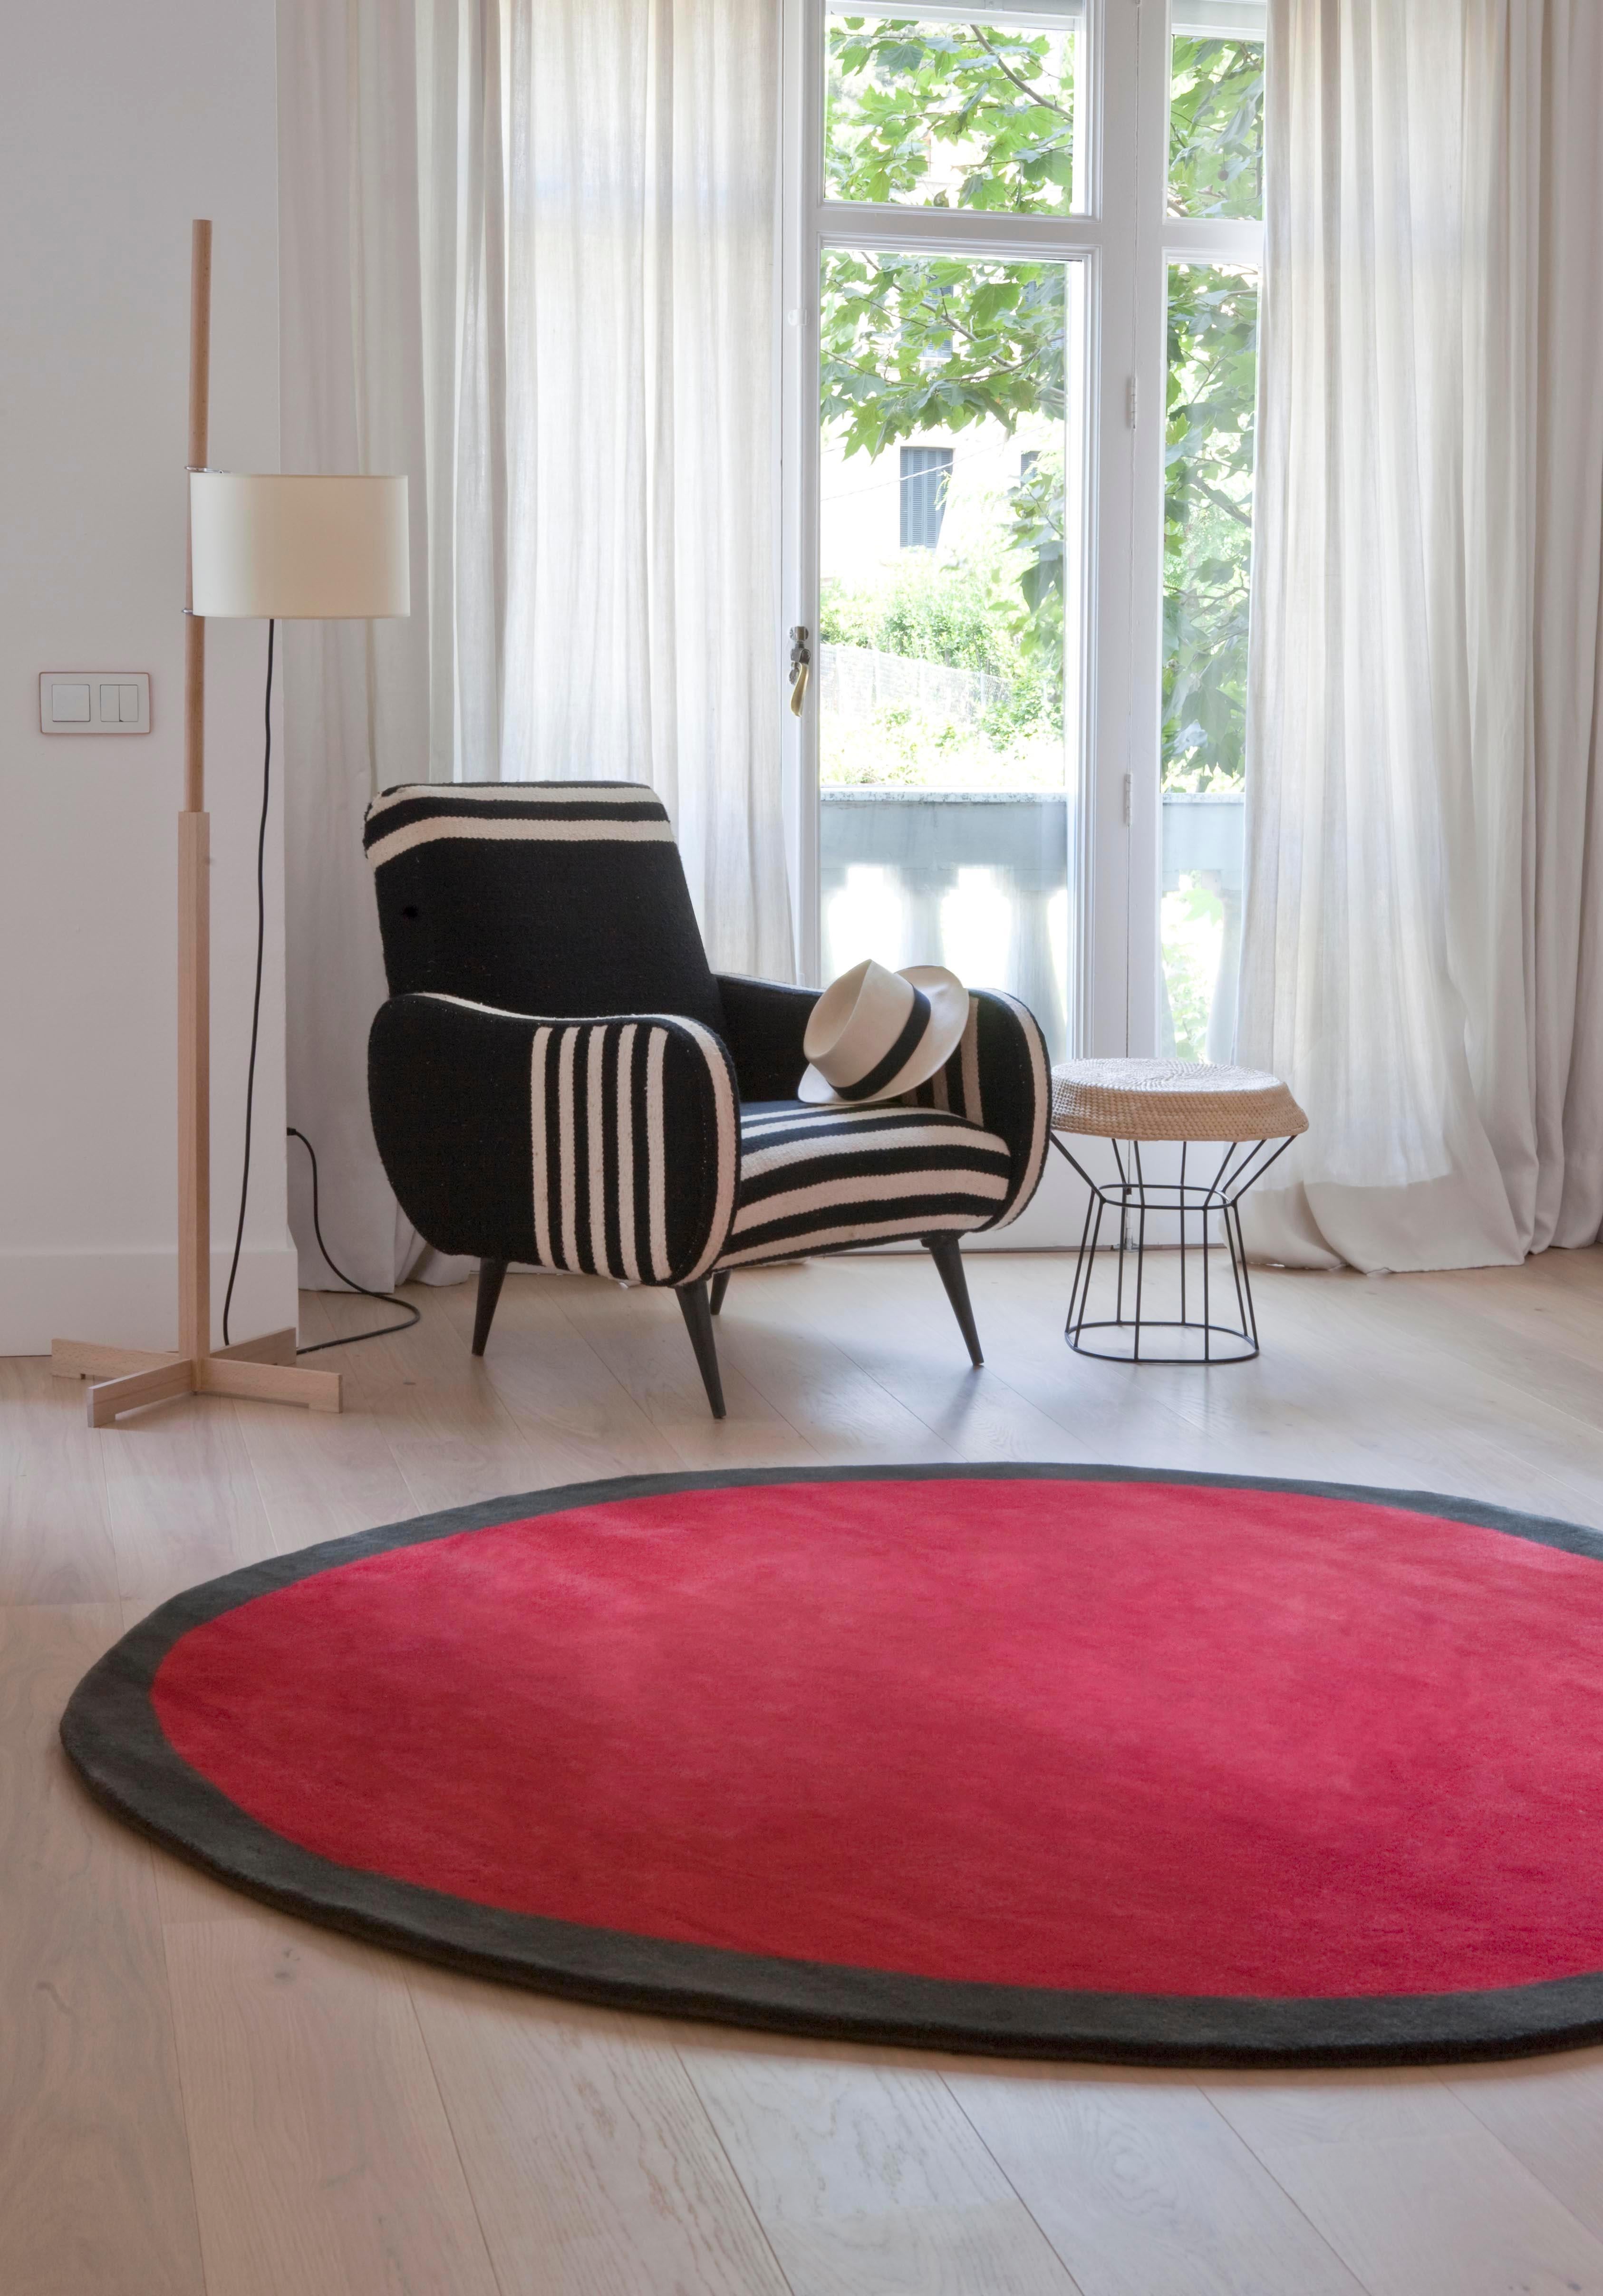 Großer runder Nanimarquina-Teppich 'Aros' in Rot. Hergestellt aus 100% handgetufteter neuseeländischer Wolle. 

Dieses geometrische Muster aus kontrastierenden Farben ist ein Teppich, der niemals exakt oder symmetrisch ist. Seine subtile Asymmetrie